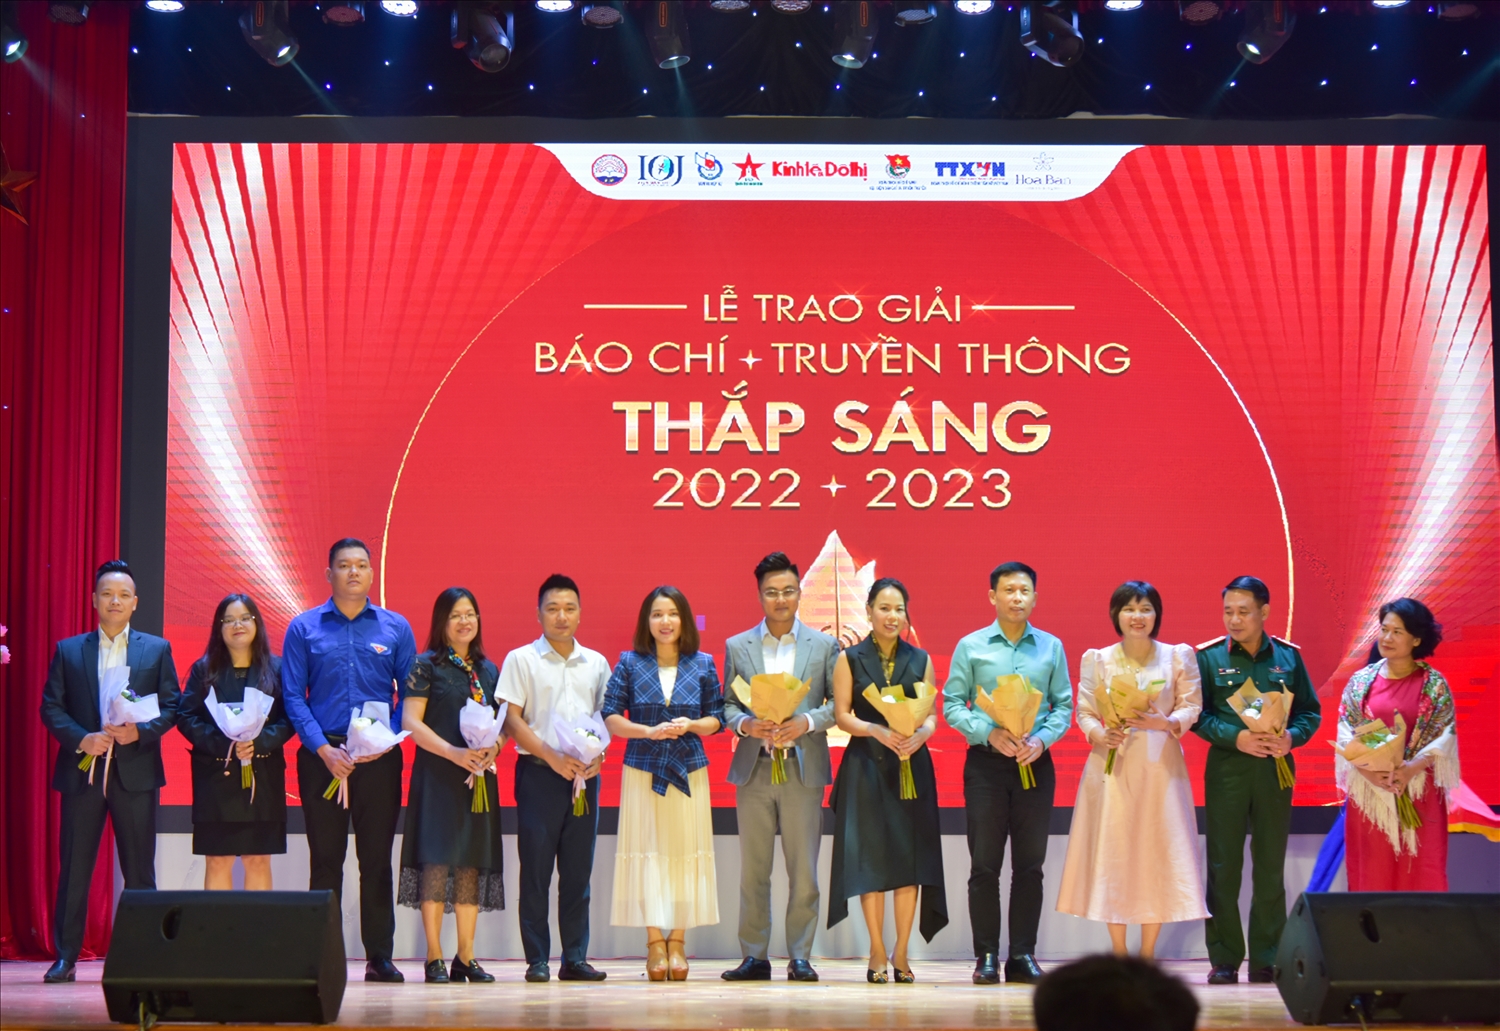 Các giám khảo trong buổi Lễ trao giản Báo chí Truyền thông Thắp sáng 2022 - 2023